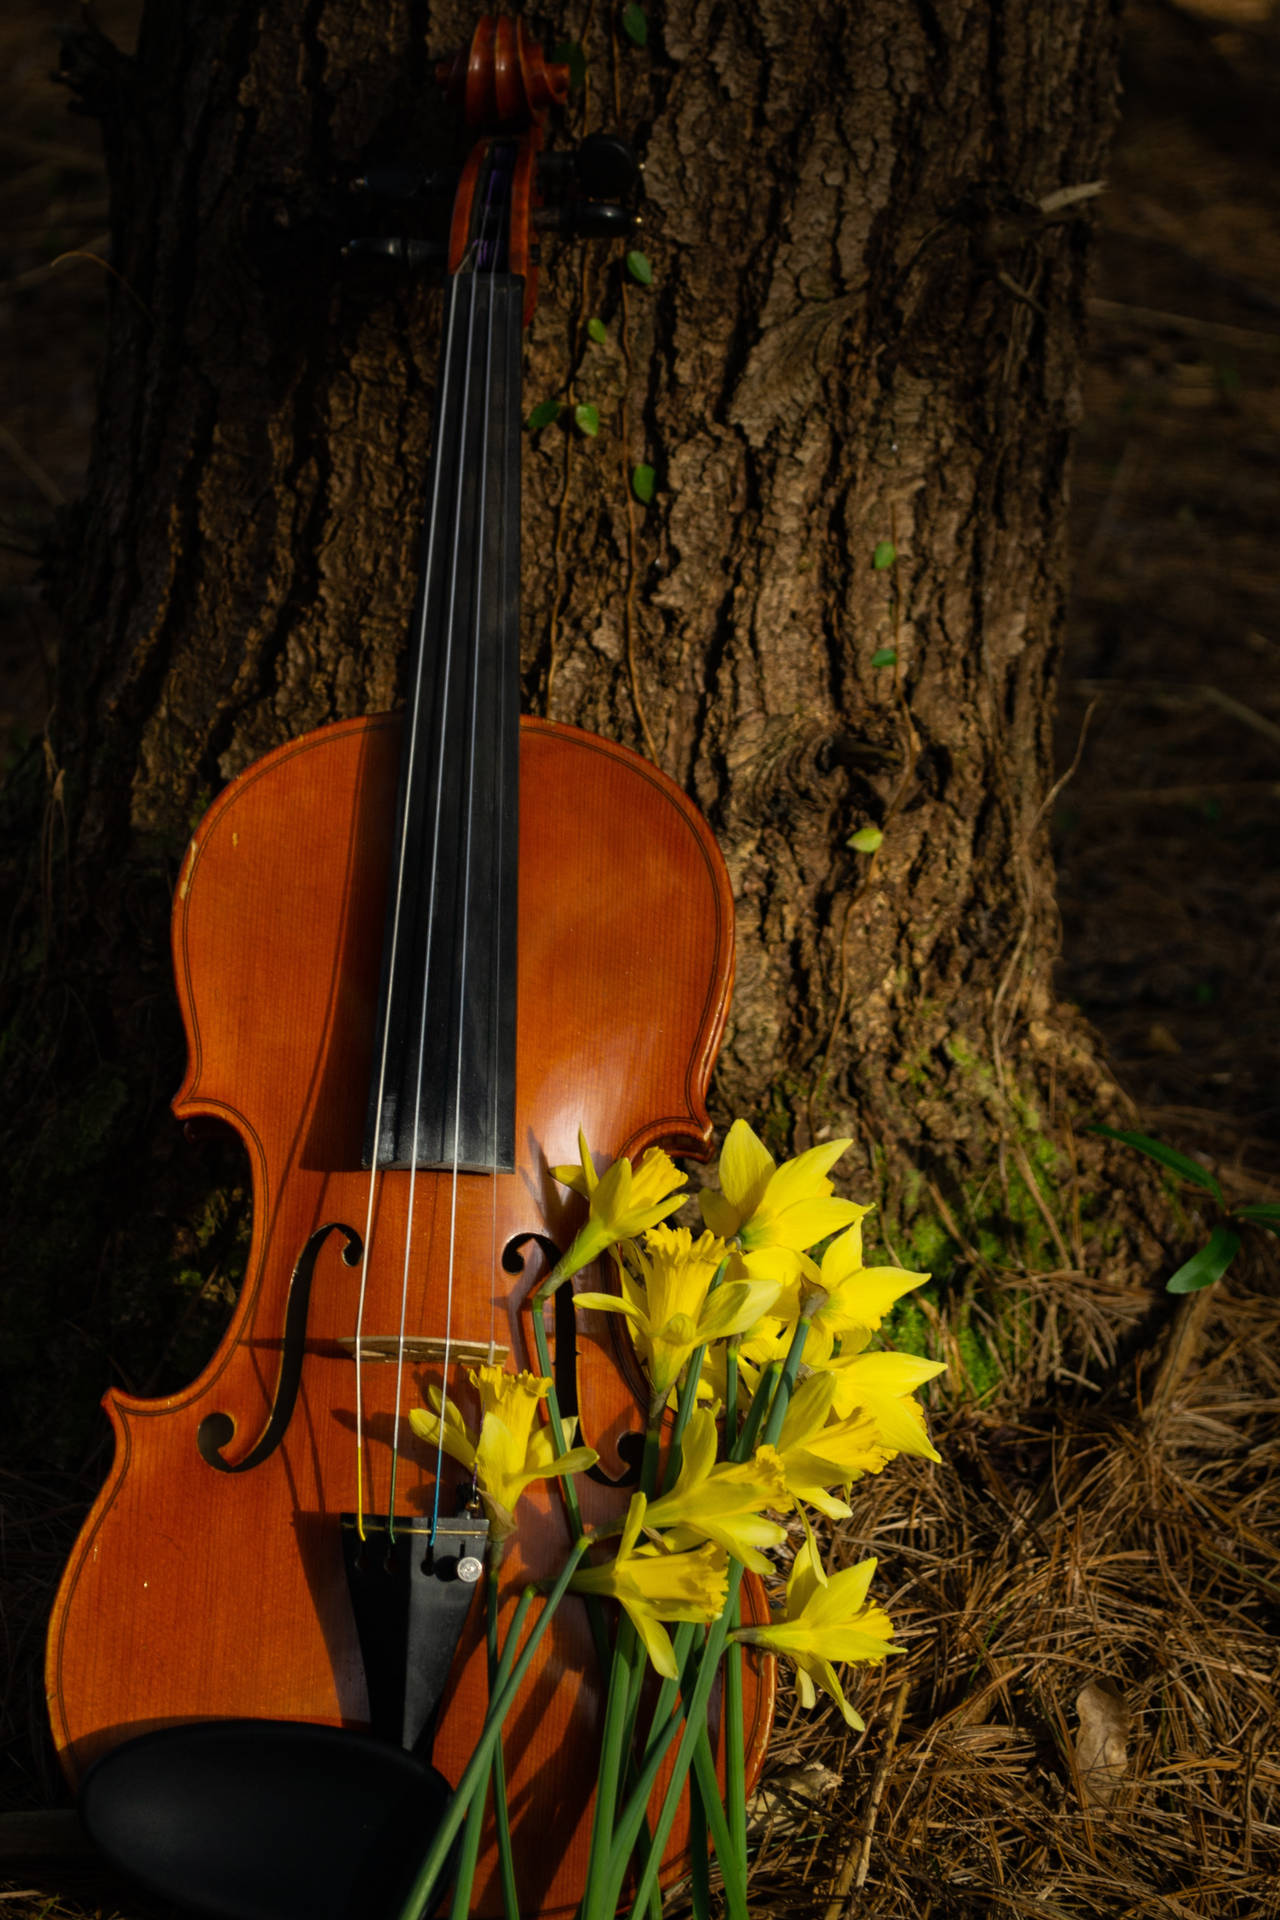 Violinand Daffodils Nature Melody SVG